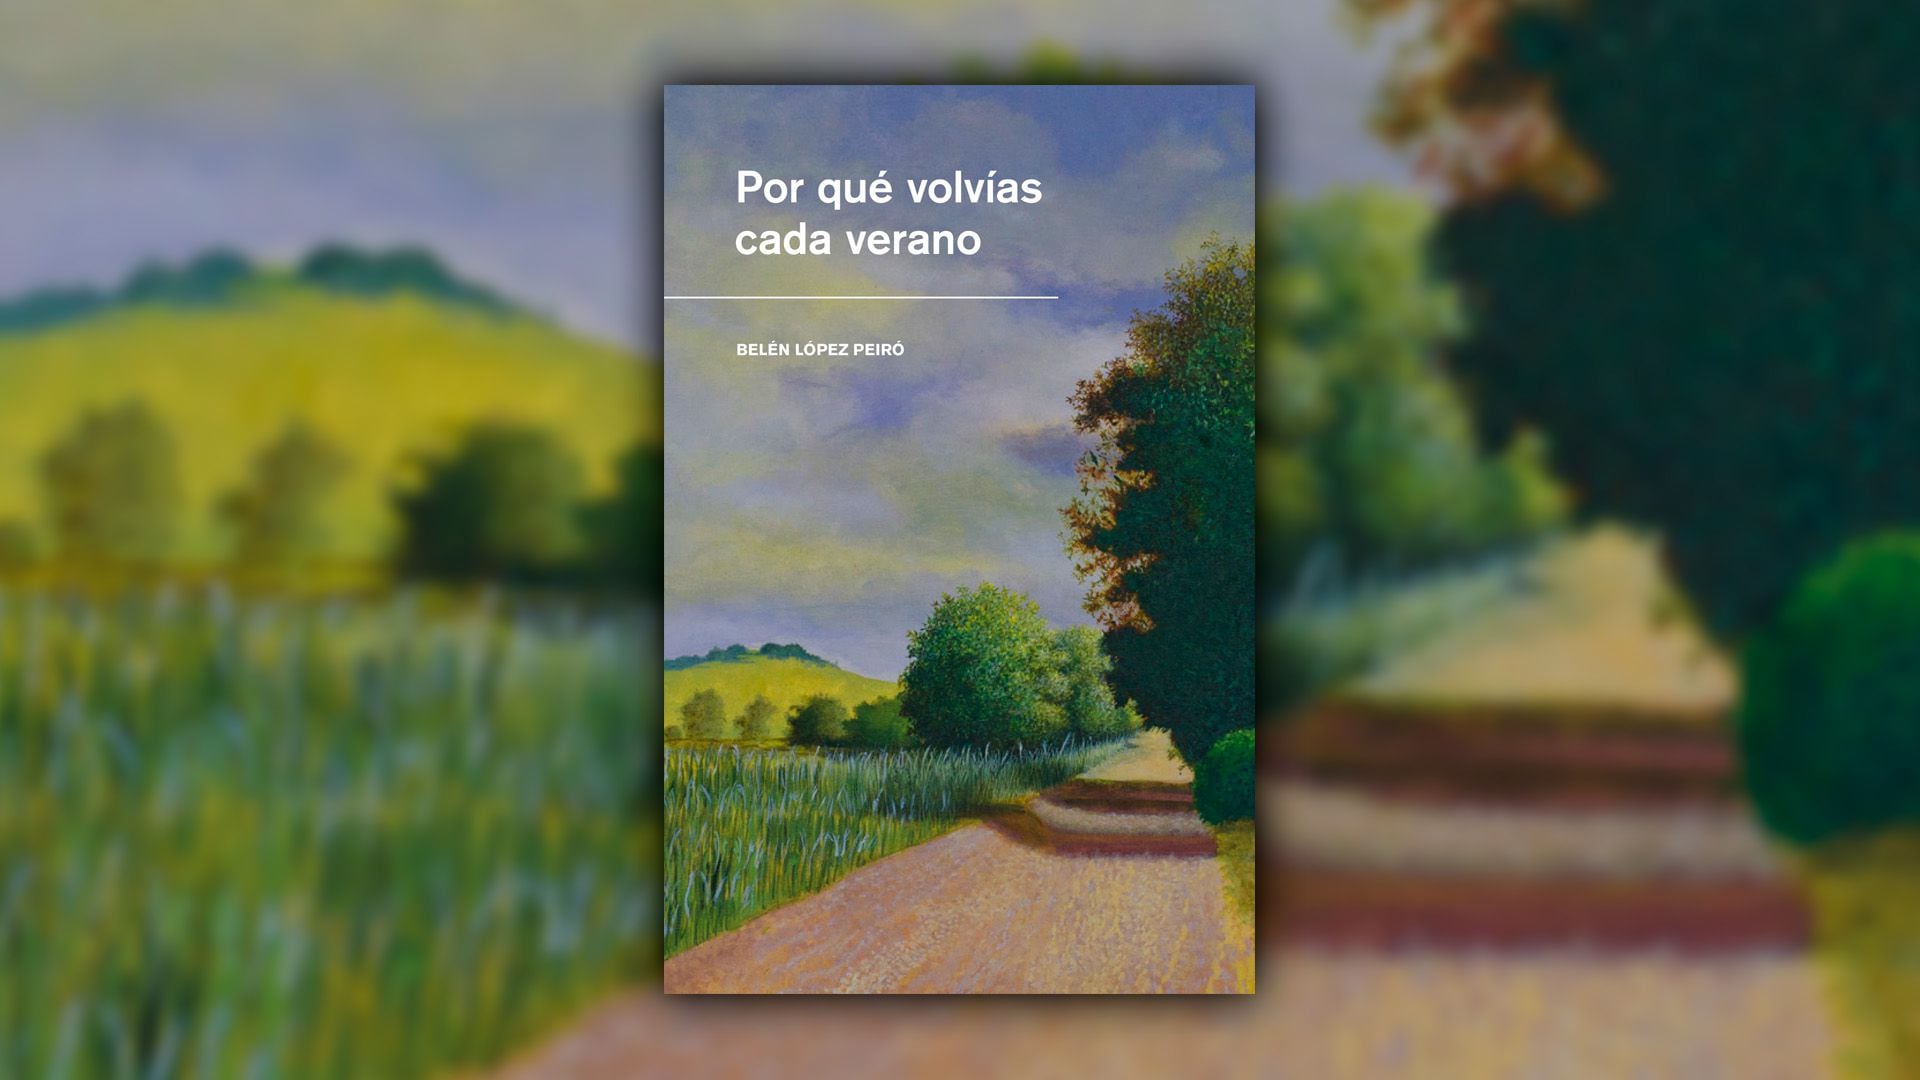 Cómo hacer que te pasen cosas buenas – Planeta de Libros Argentina